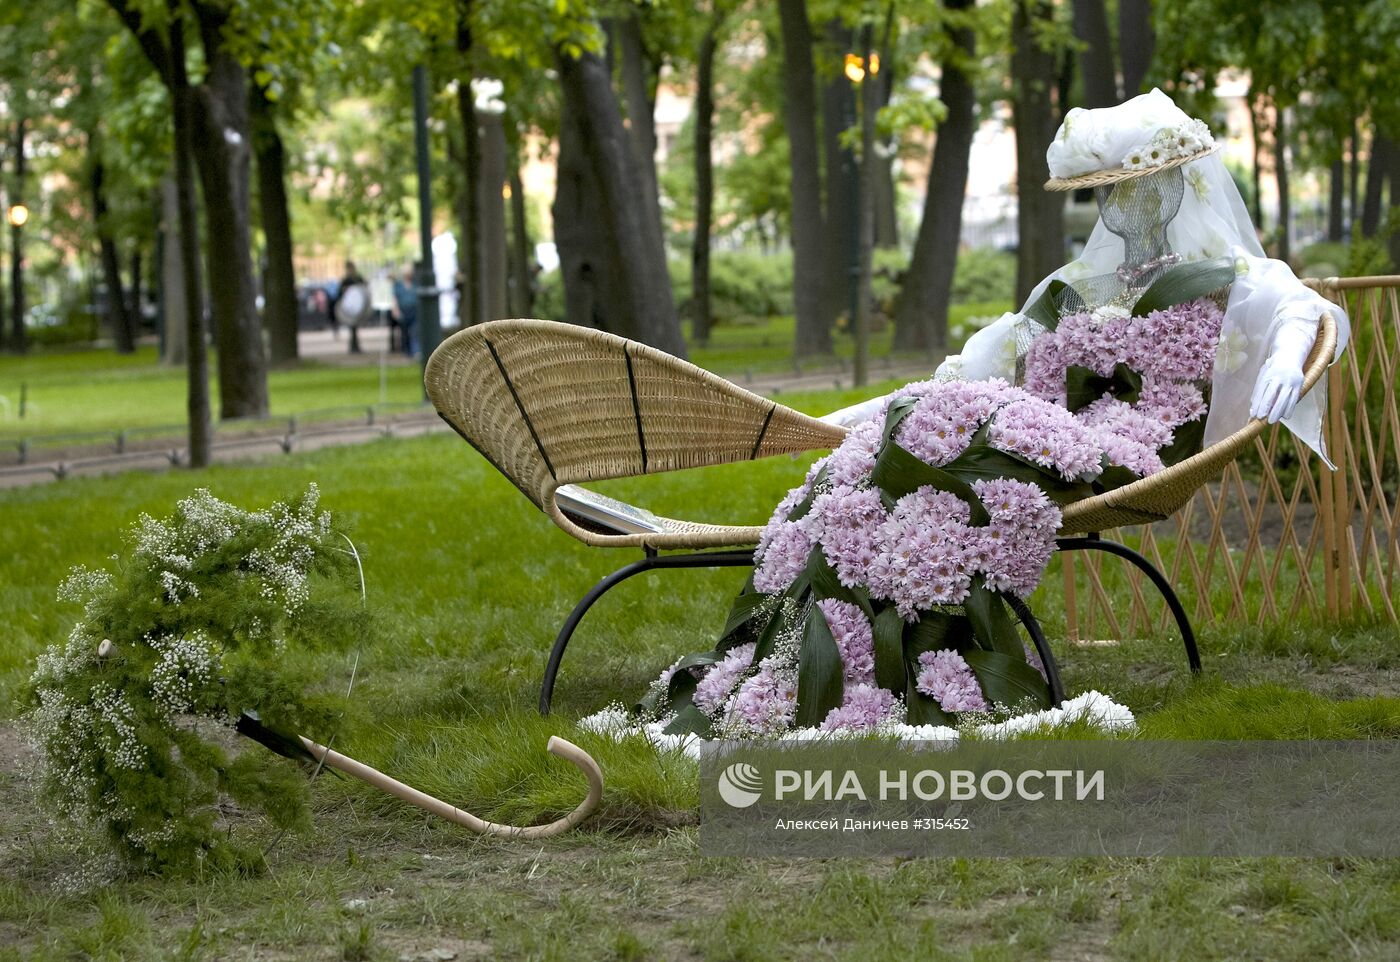 Фестиваль "Императорские сады России" в Санкт-Петербурге